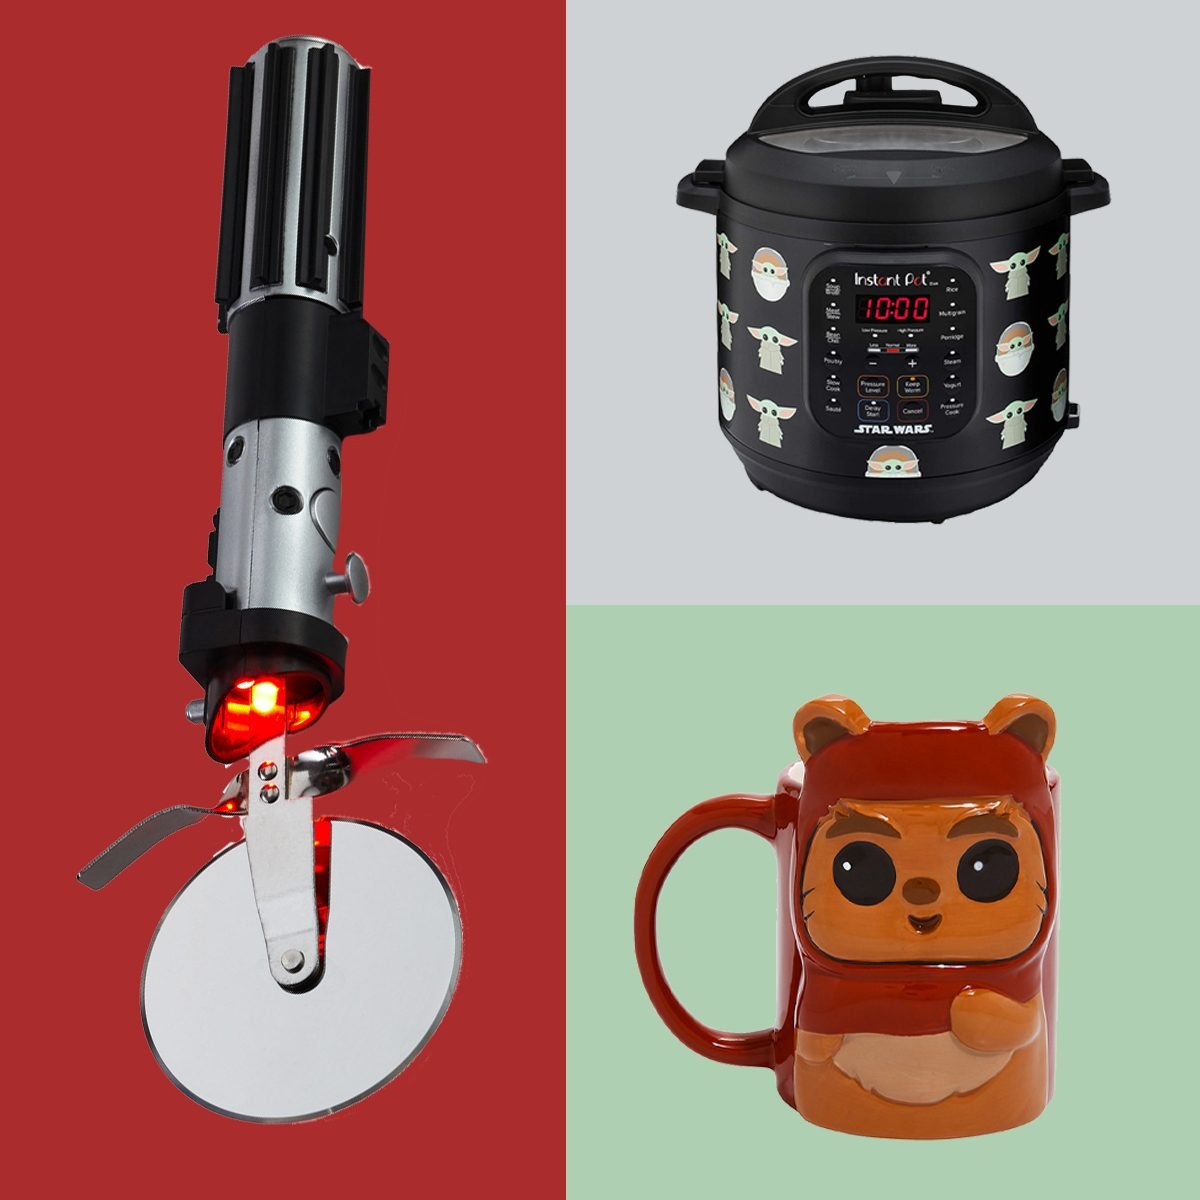 Best Star Wars Gifts - 15+ Star Wars Kitchen Products